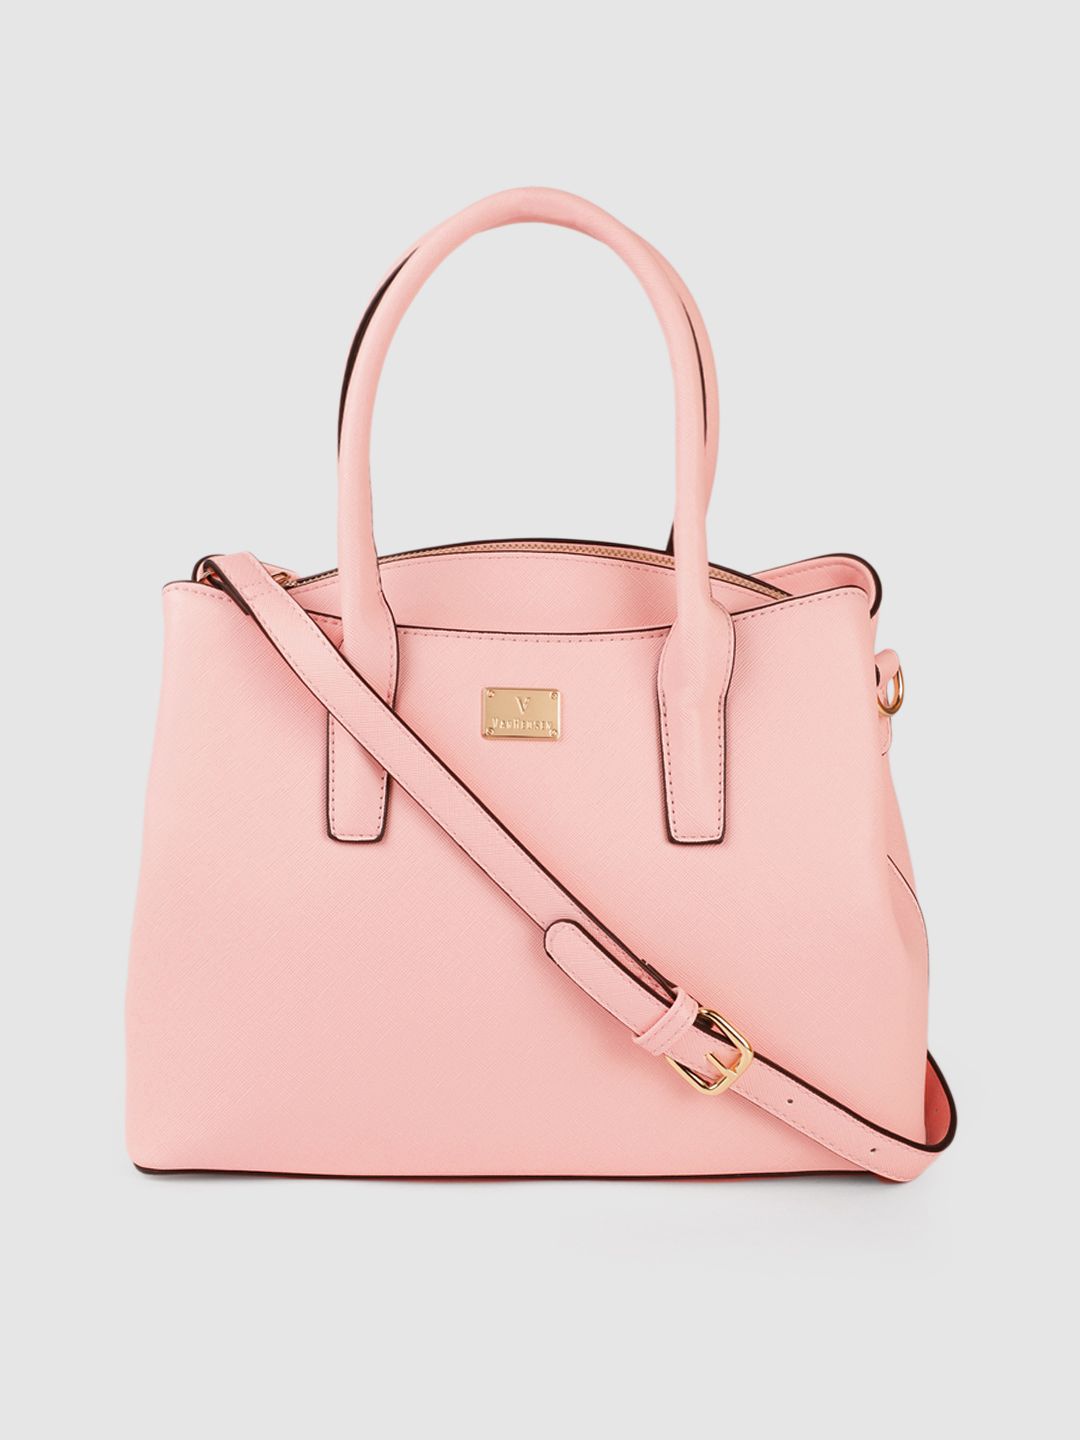 Van Heusen Pink Solid Handheld Bag Price in India